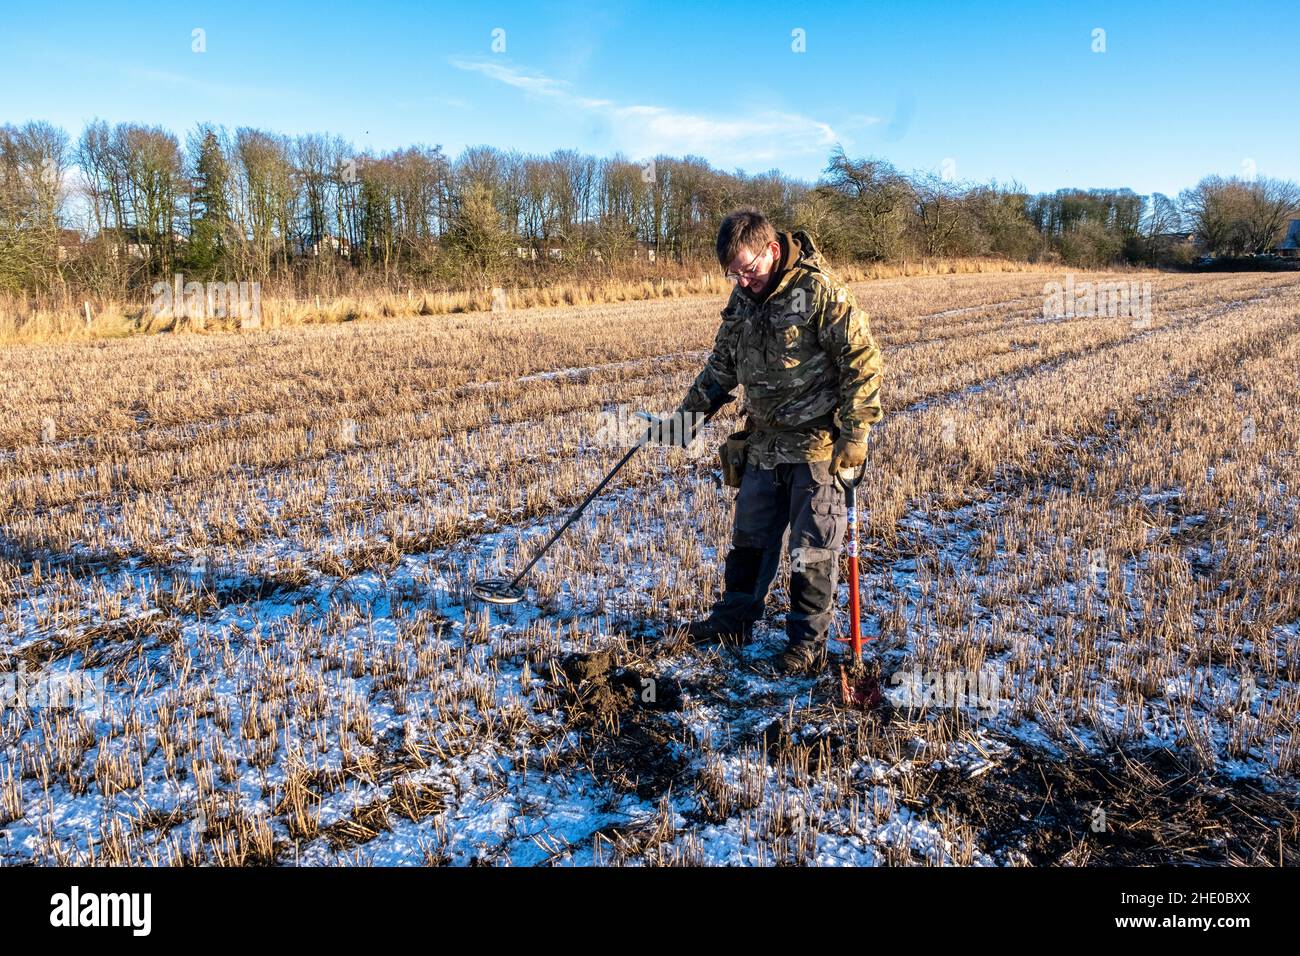 Ein Mann, der Metalldetektor verwendet, um auf einem Bauernfeld in West Lothian, Schottland, nach vergrabenen Münzen zu suchen. Stockfoto